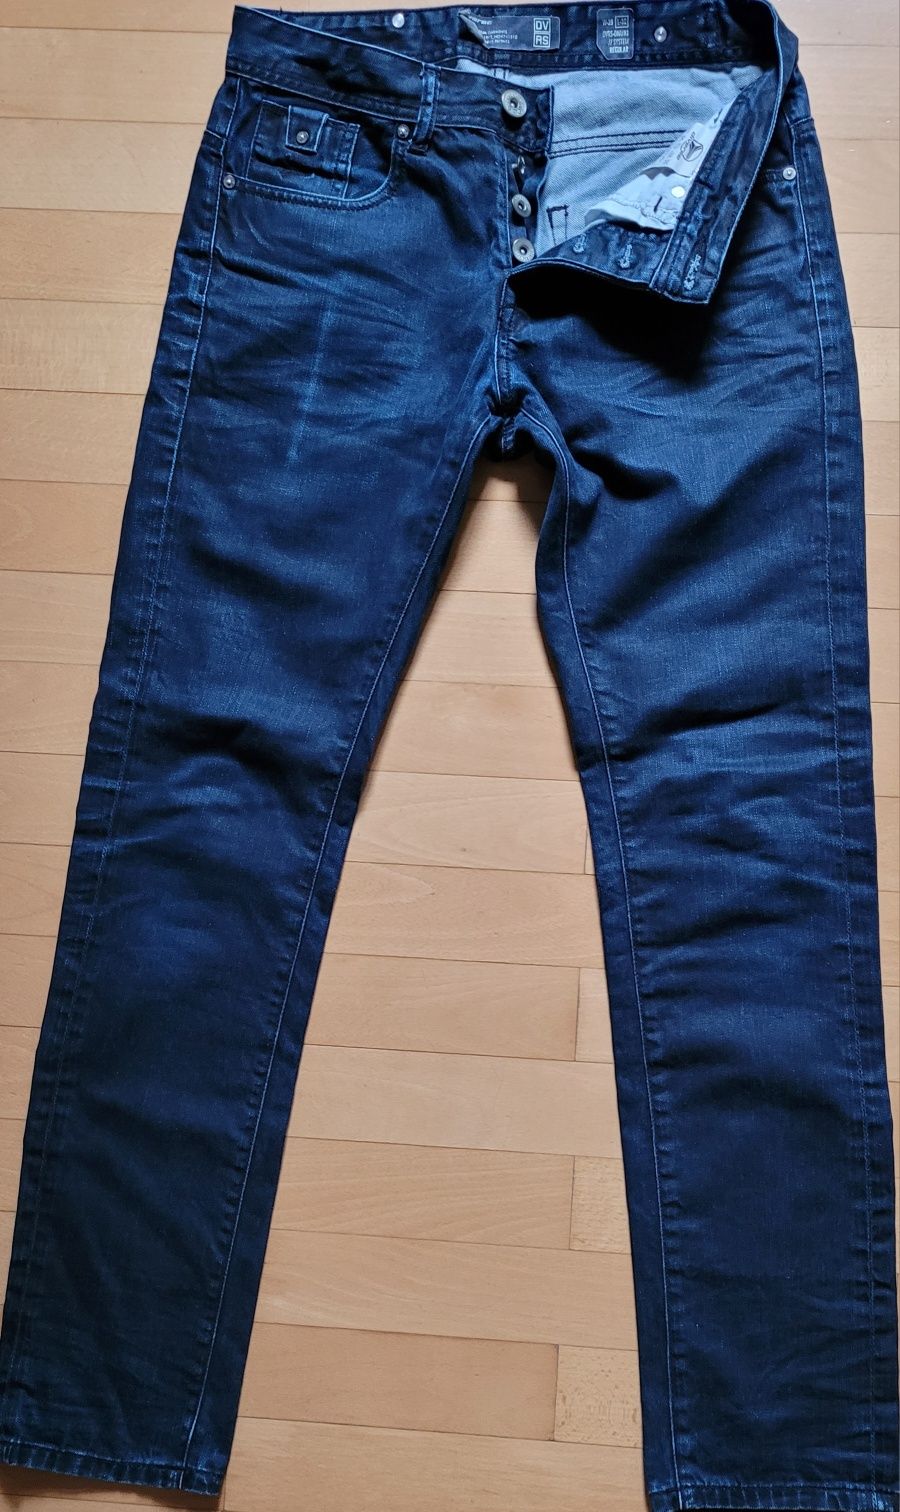 Spodnie męskie jeansowe DIVERSE W29 L32